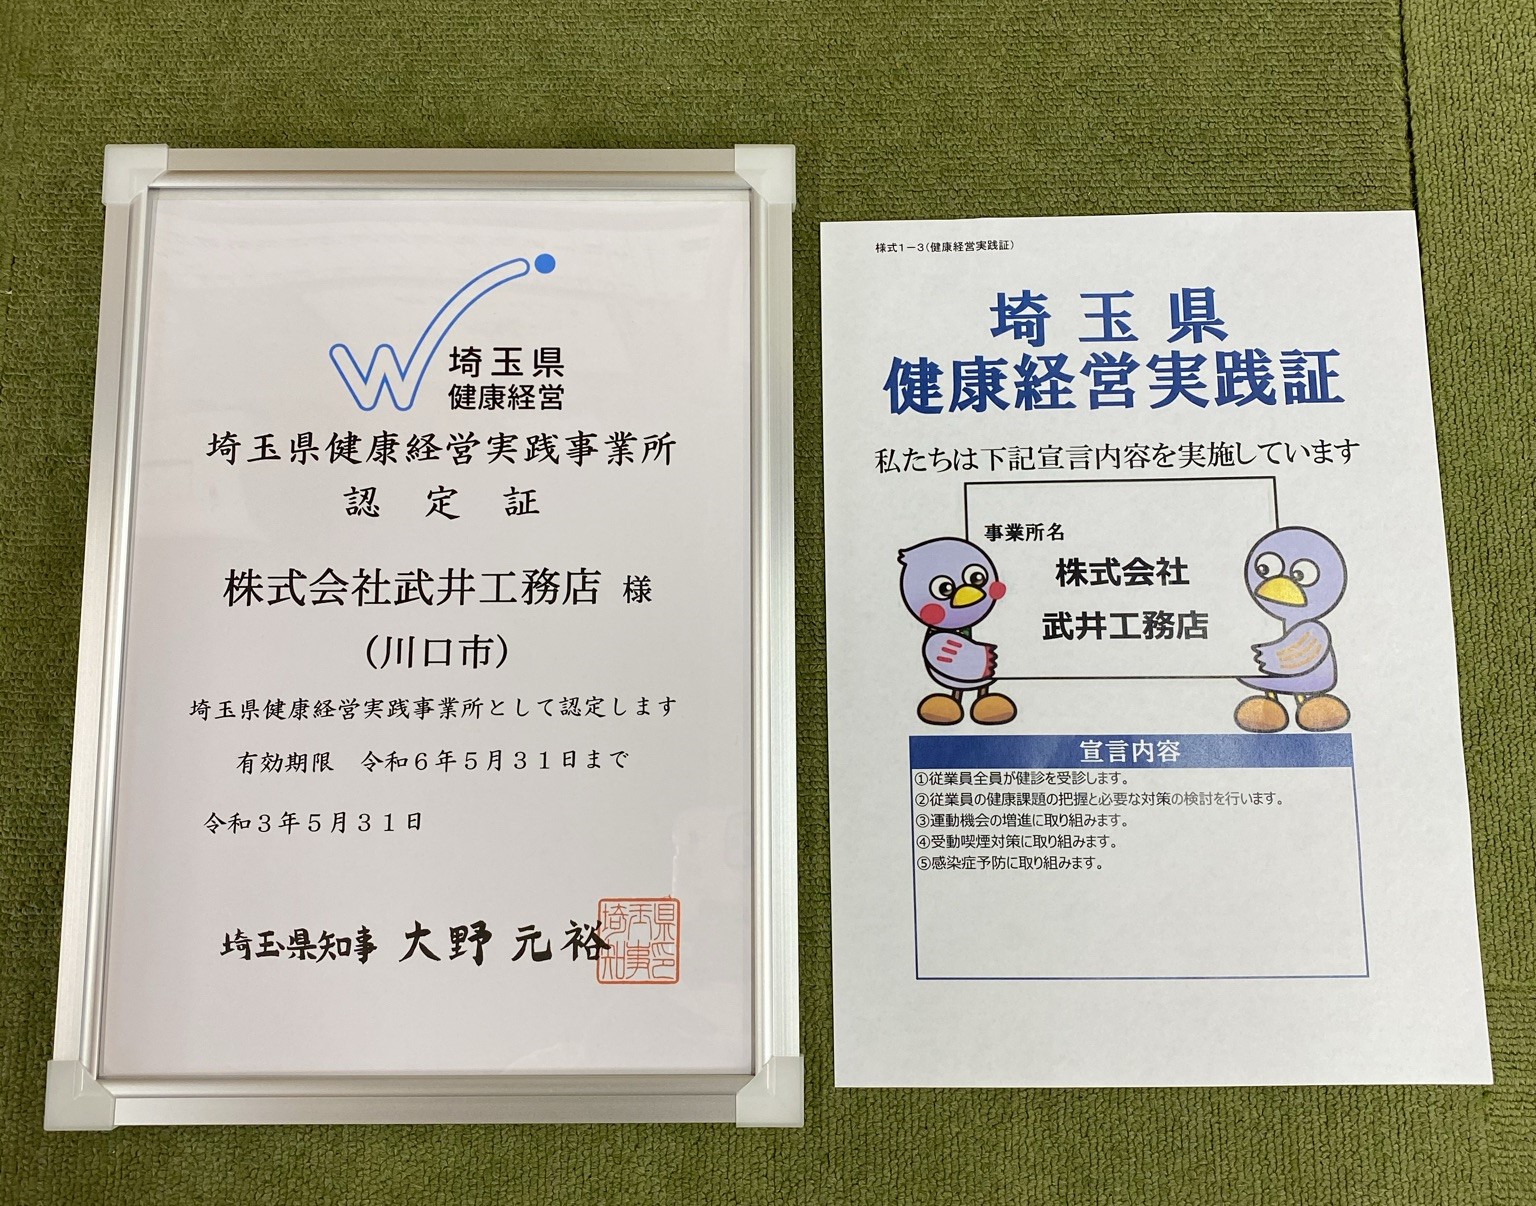 埼玉県健康経営実践事業所に認定されました。